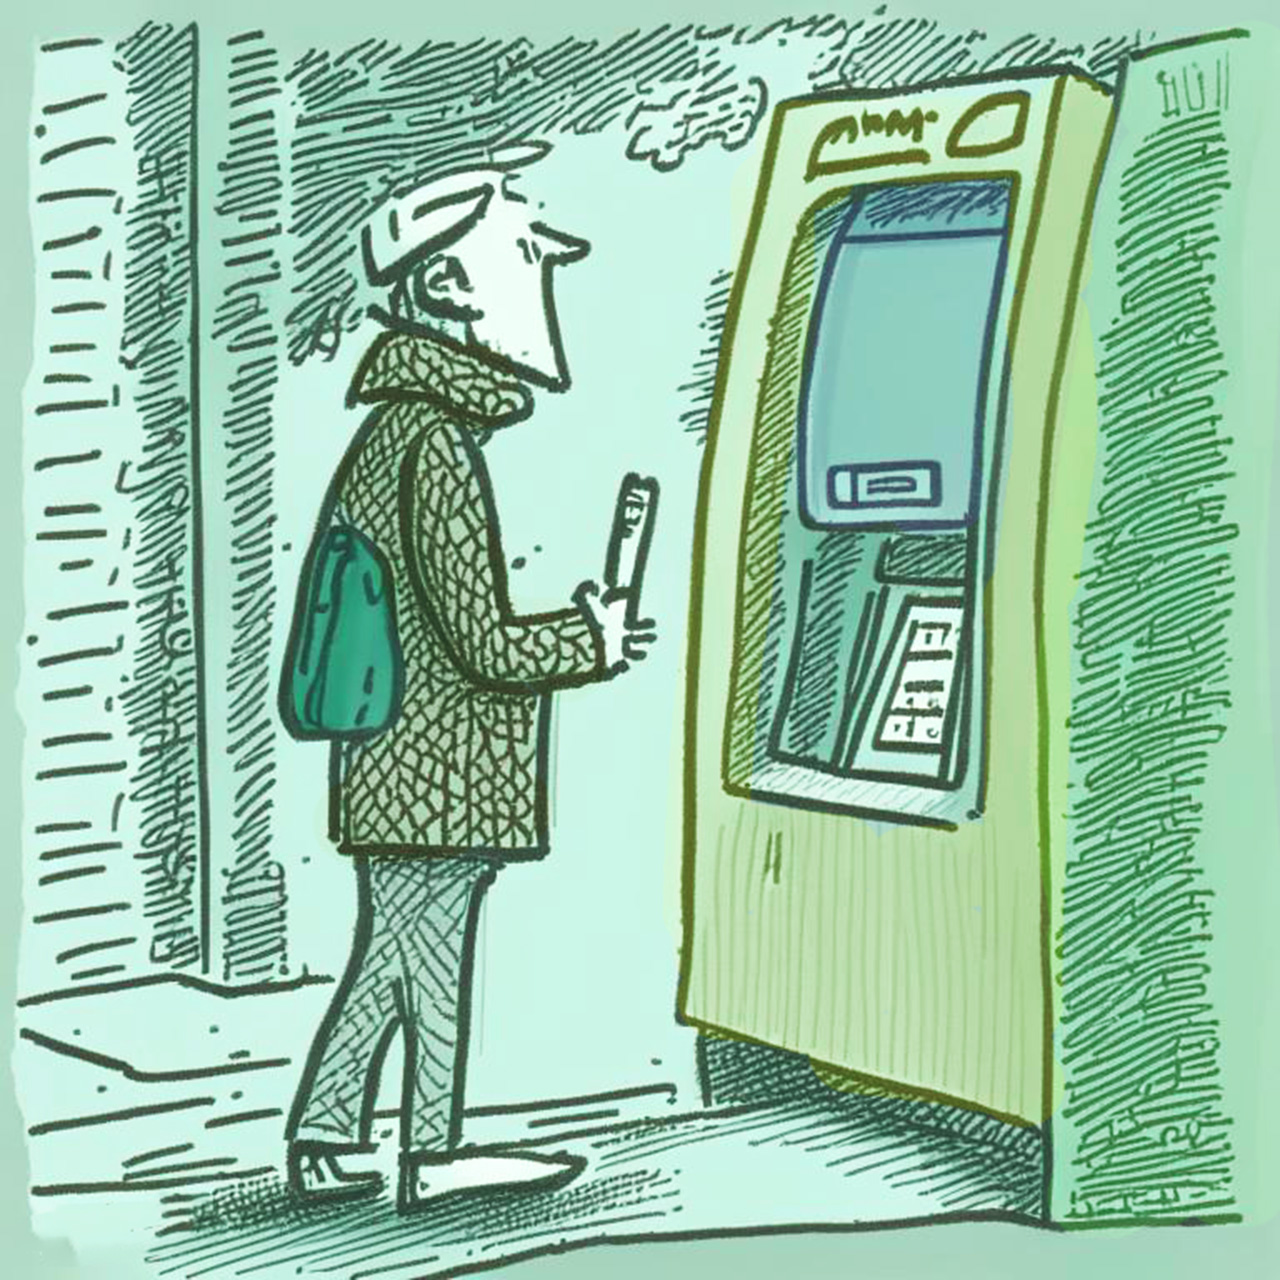 СМИ: „Банки ужесточают выдачу наличных в банкоматах“ — но это не так